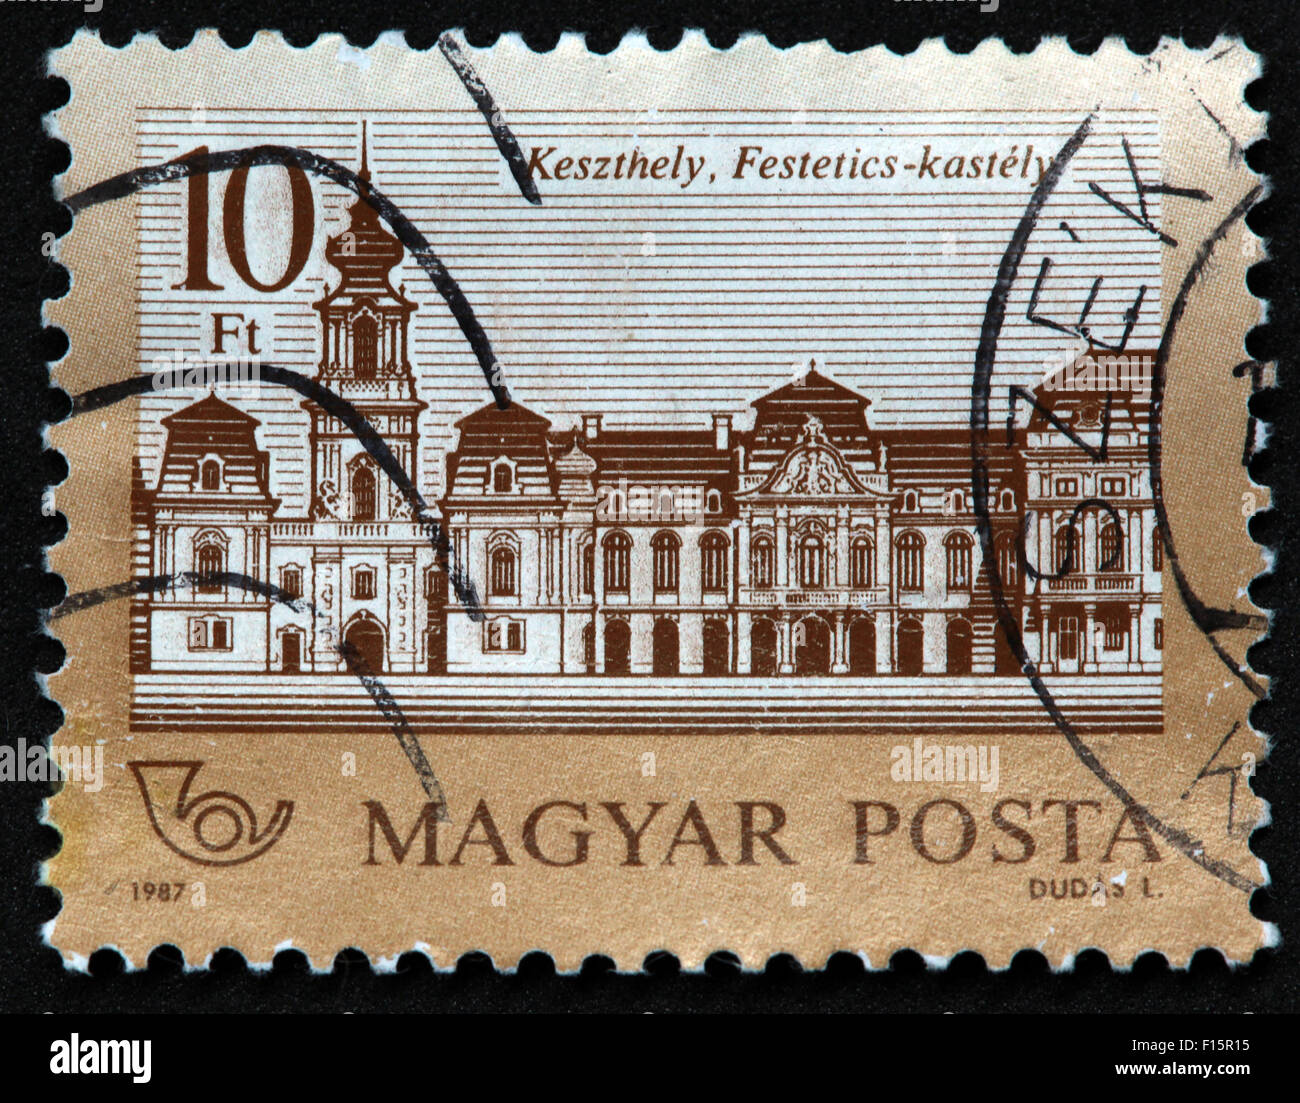 Magyar posta 1987 Dudas 10ft casa castello Keszthely Festetics-kastely SZE francobollo SZEK, Ungheria Foto Stock